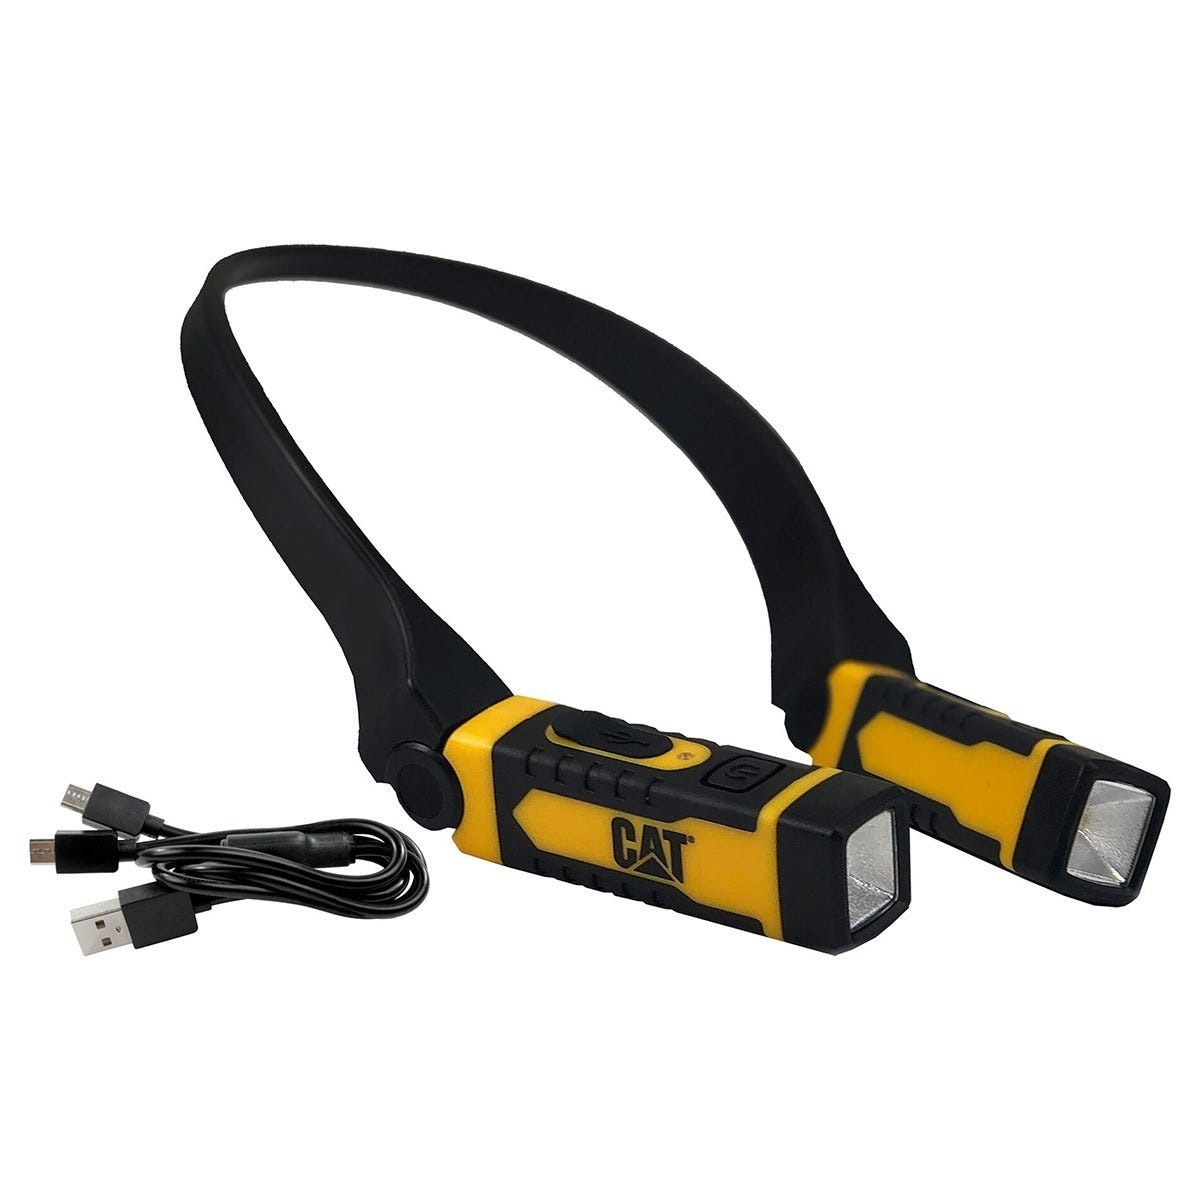 Lampe de cou rechargeable Caterpillar 300 Lumens Chargeur USB Portée 25 m Etanche IPX6 0